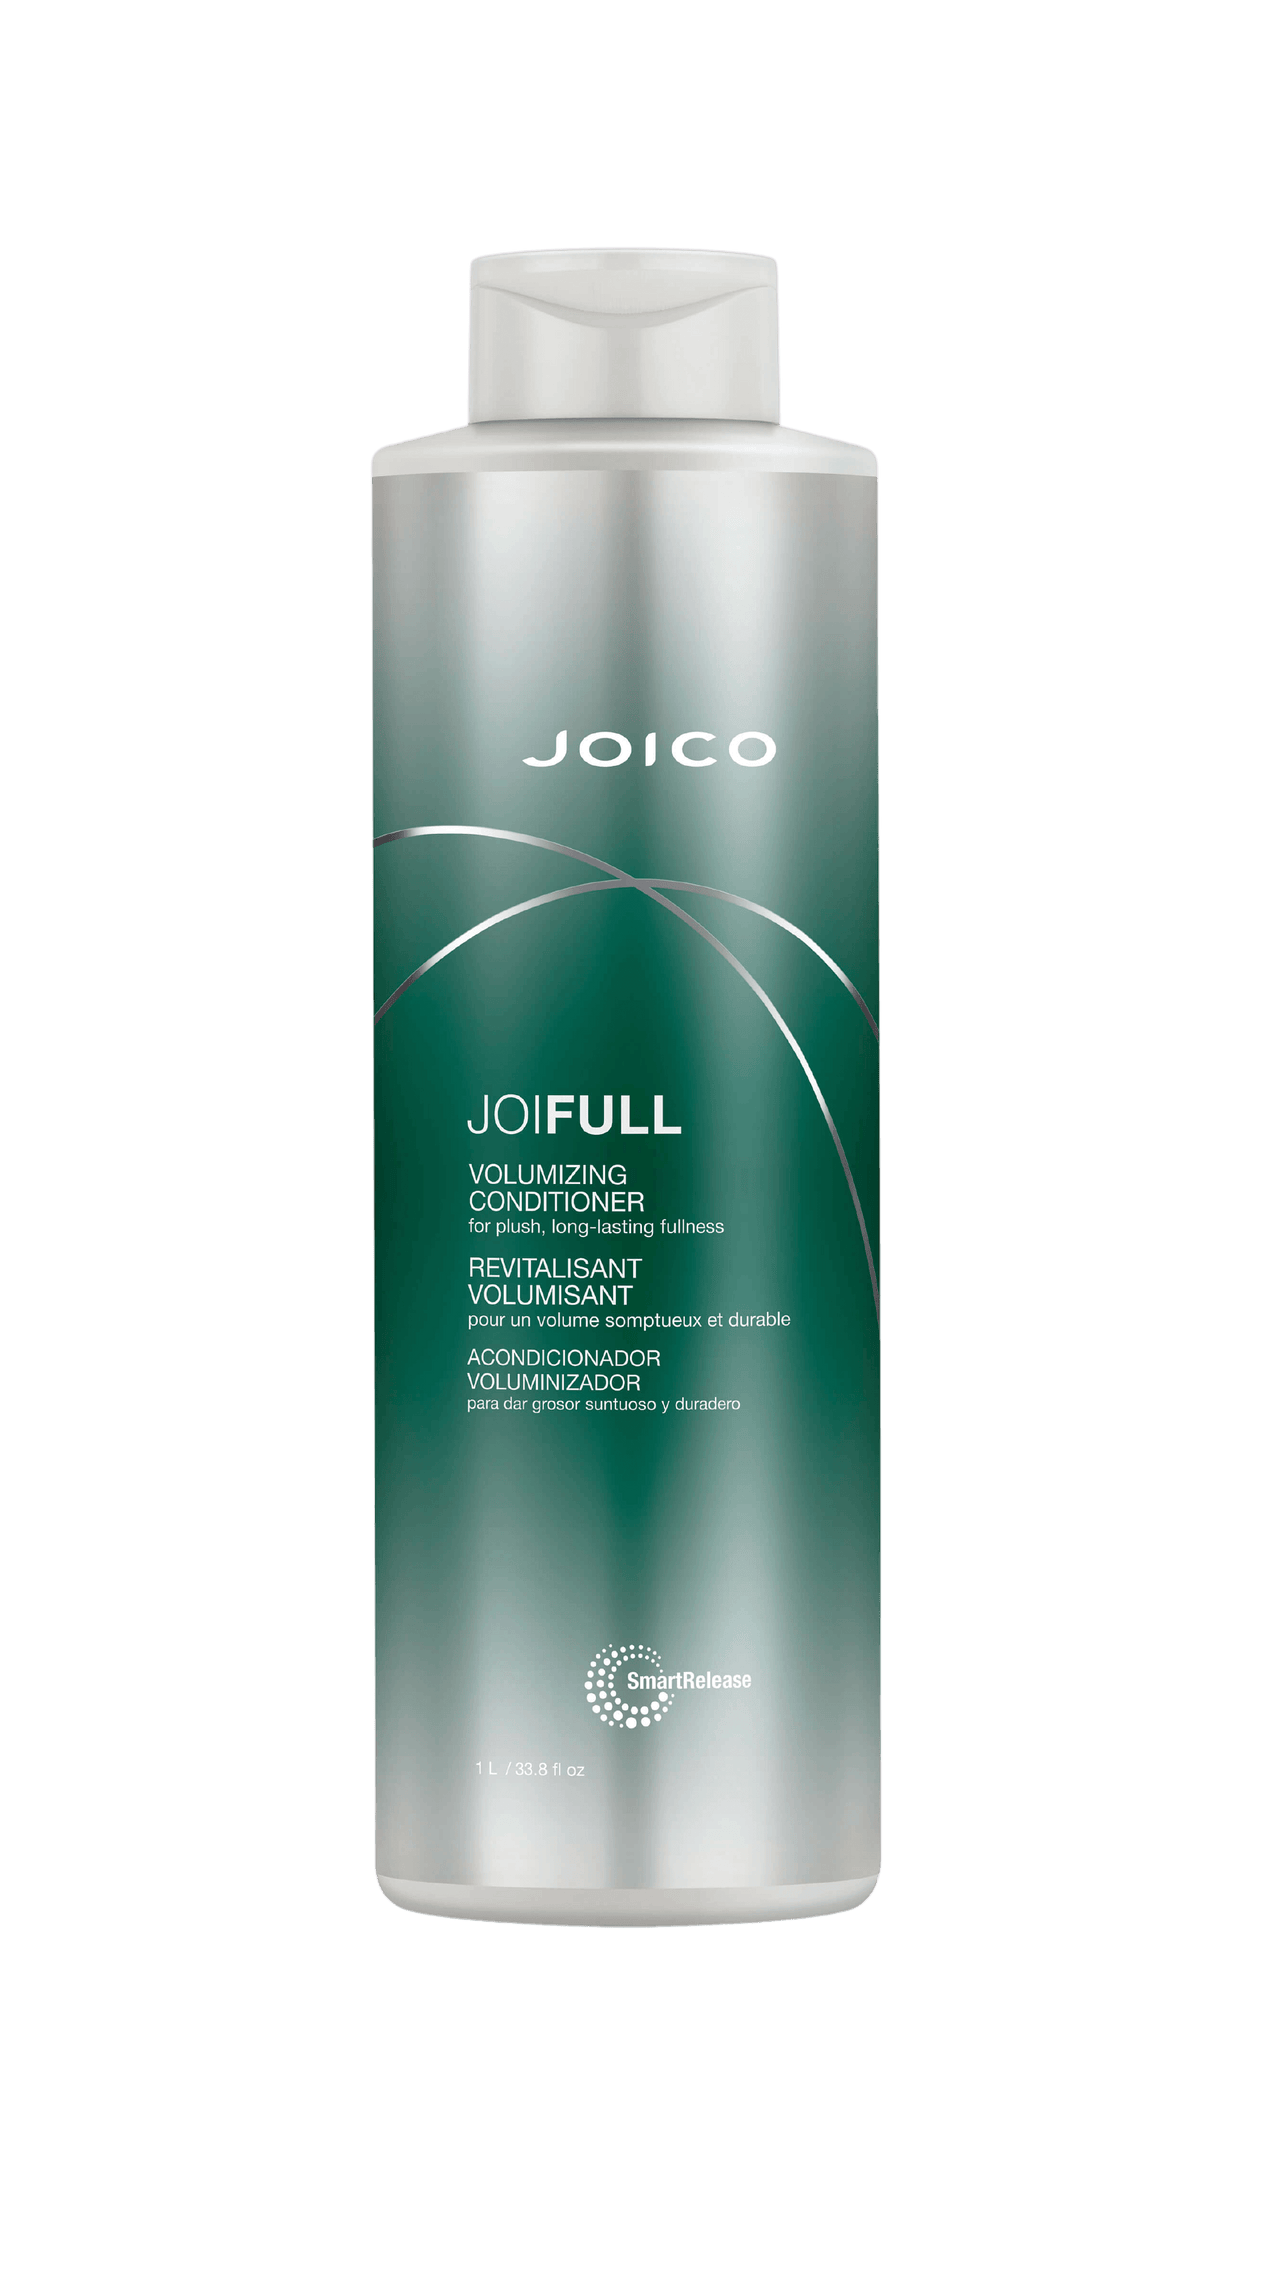 Joico Joifull Volumizing Conditioner 33.8oz Bottle